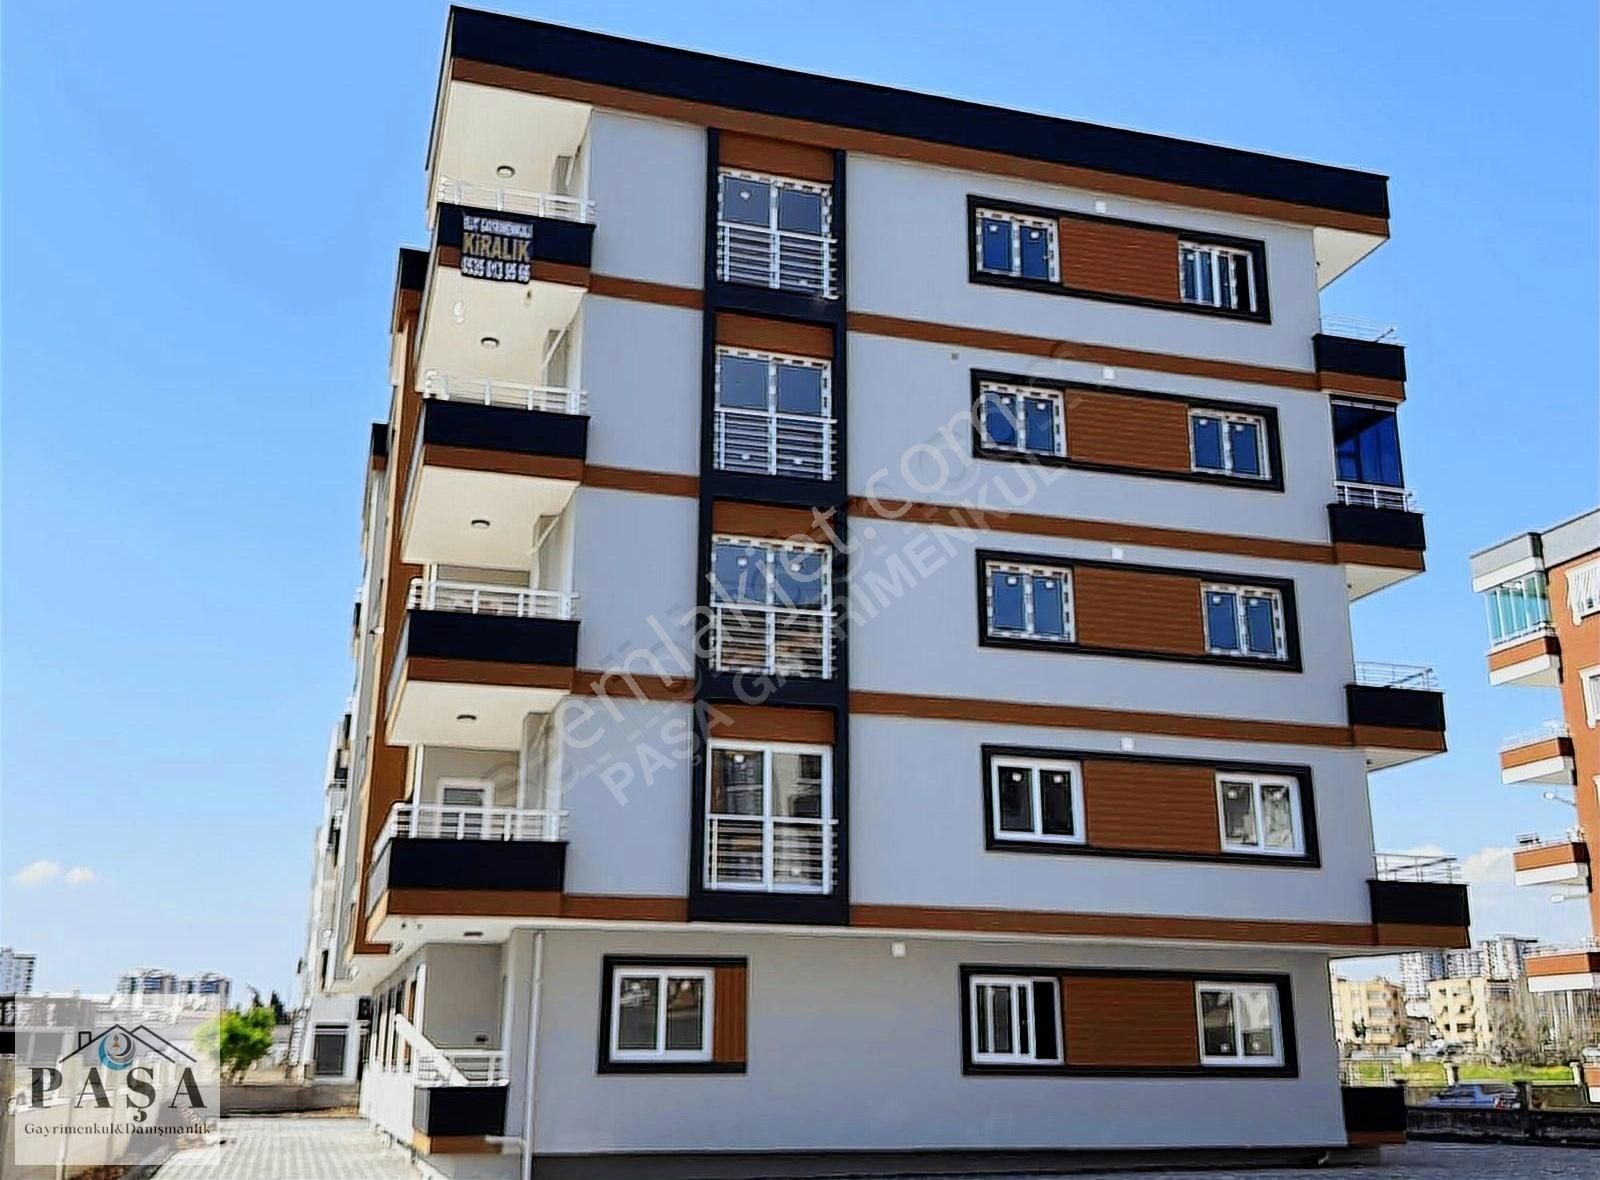 Tarsus Kavaklı Satılık Daire Golden House Sitesi'nde Satılık Daire Paşa GYRMNKL'den%3.02 Kredi